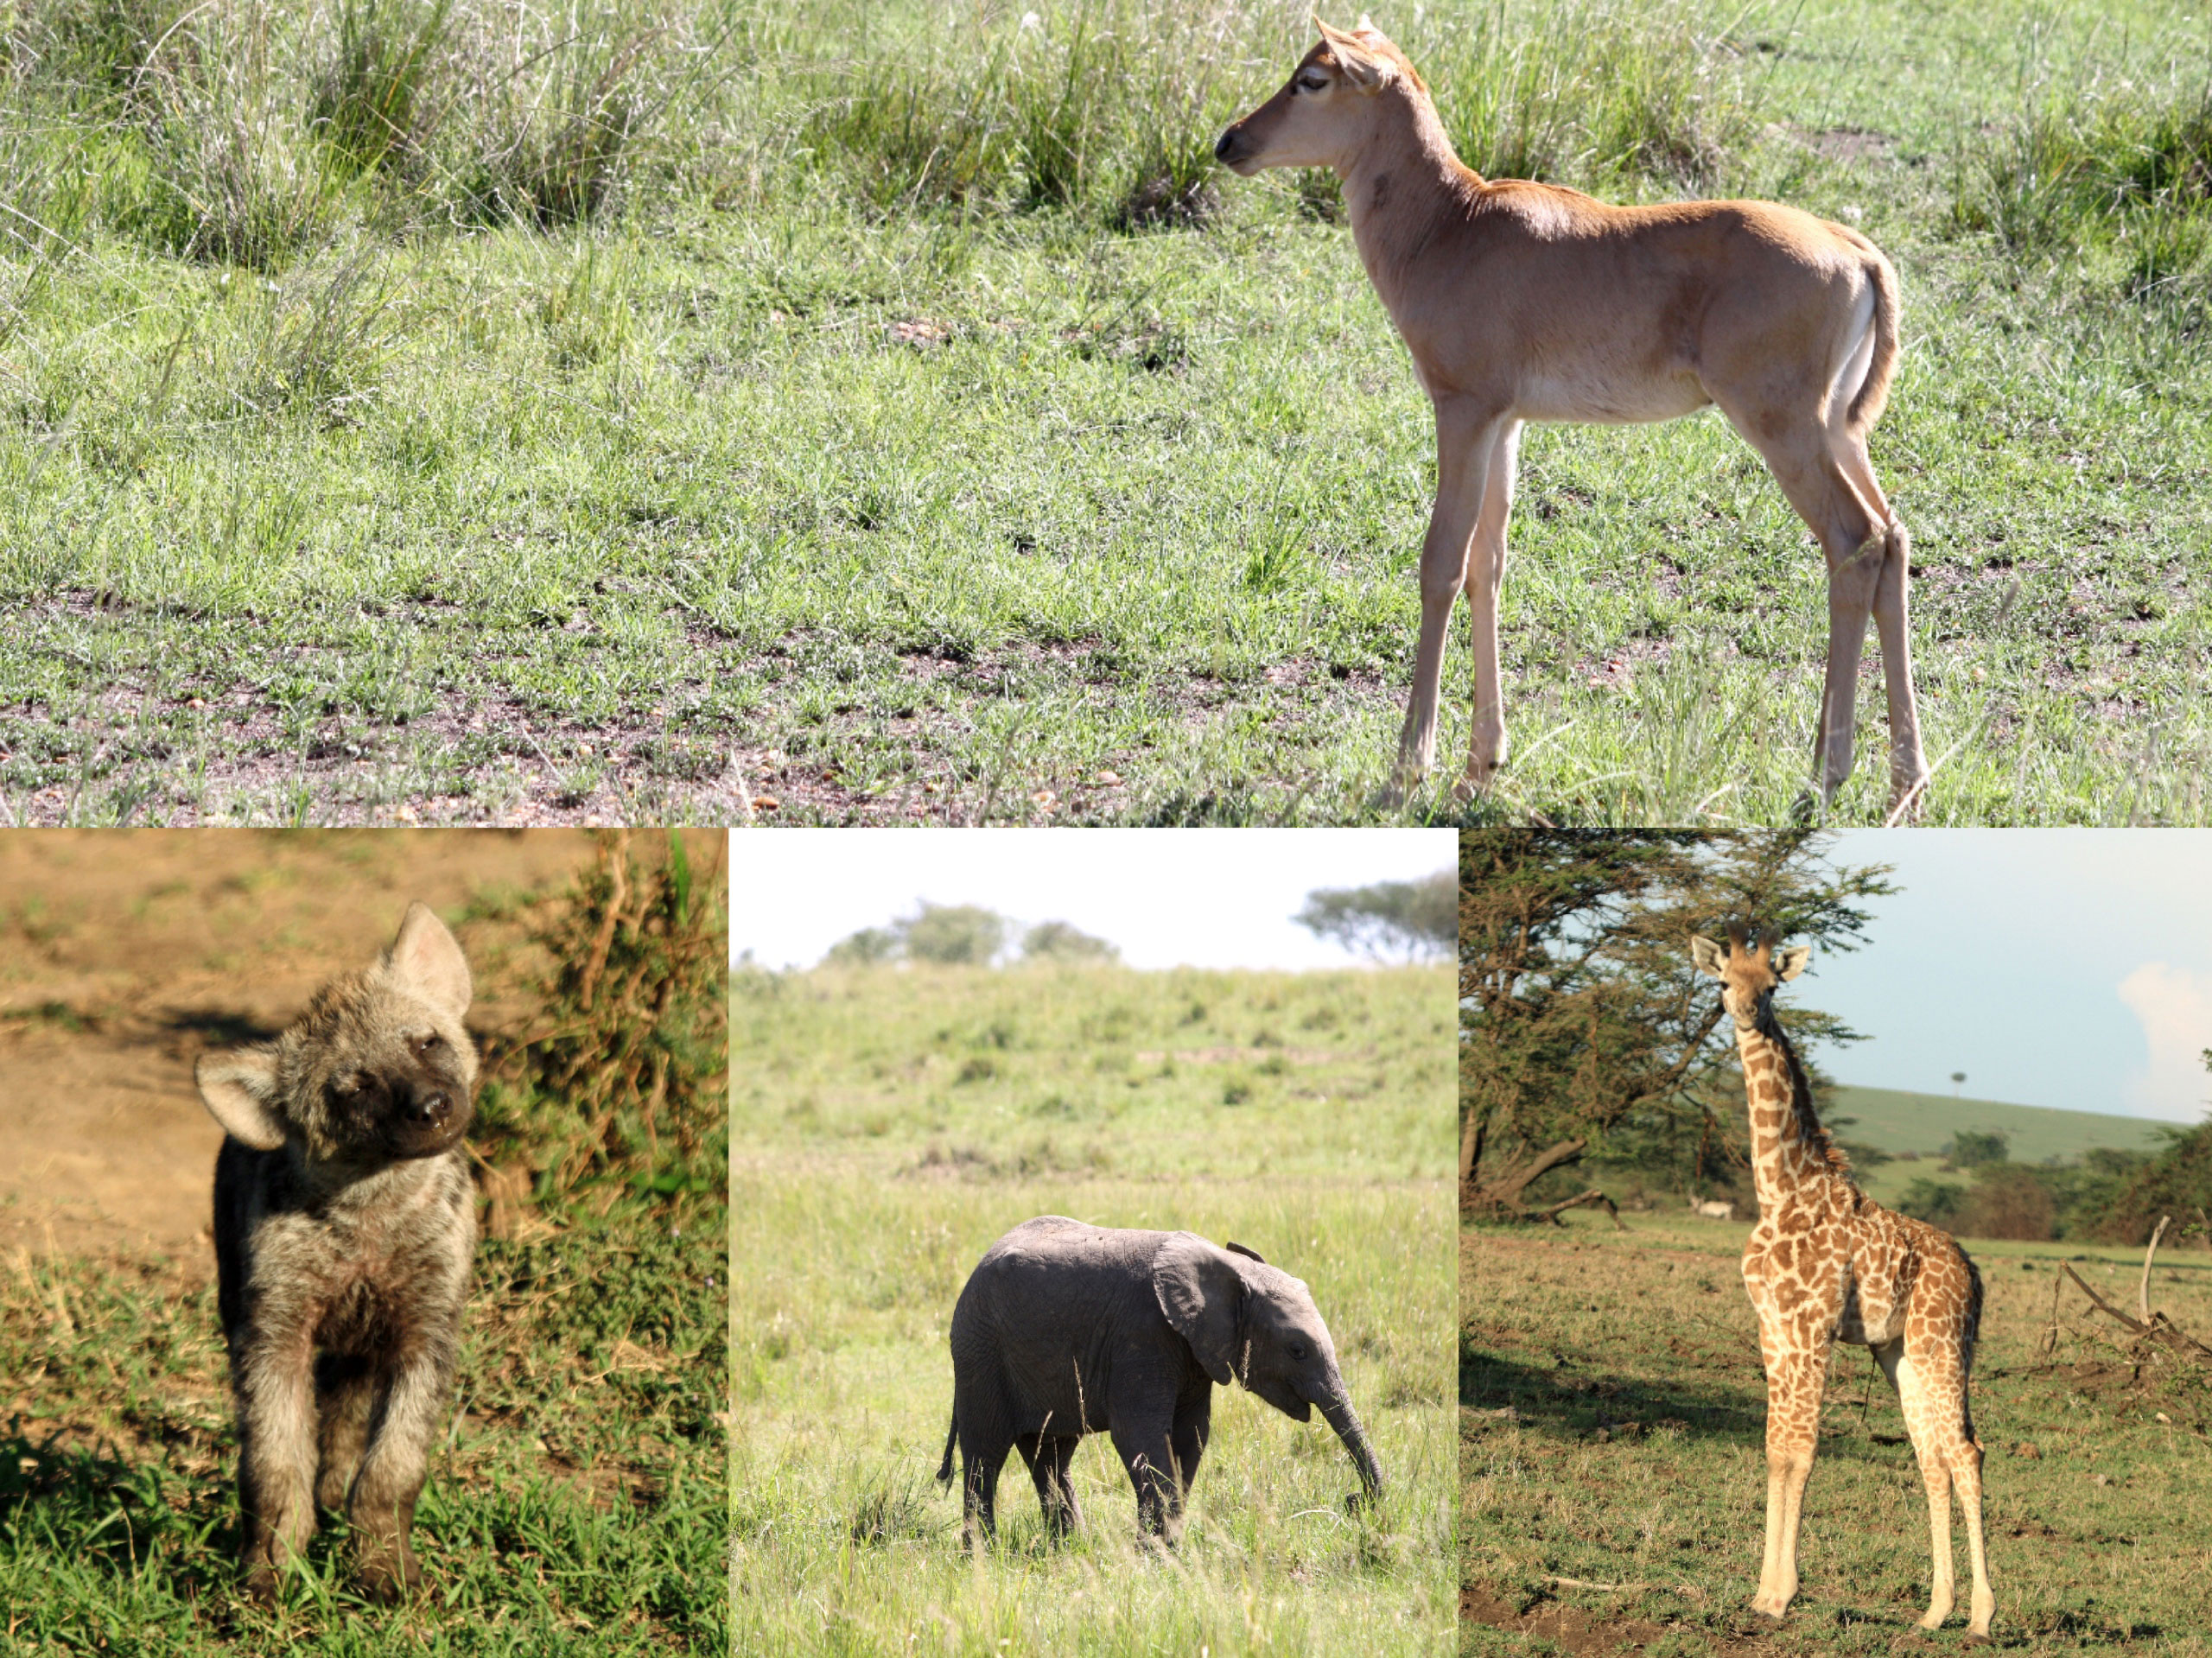 safari estación lluvias enkosi africa masai mara kenya baby elephant hyena giraffe hartebeest